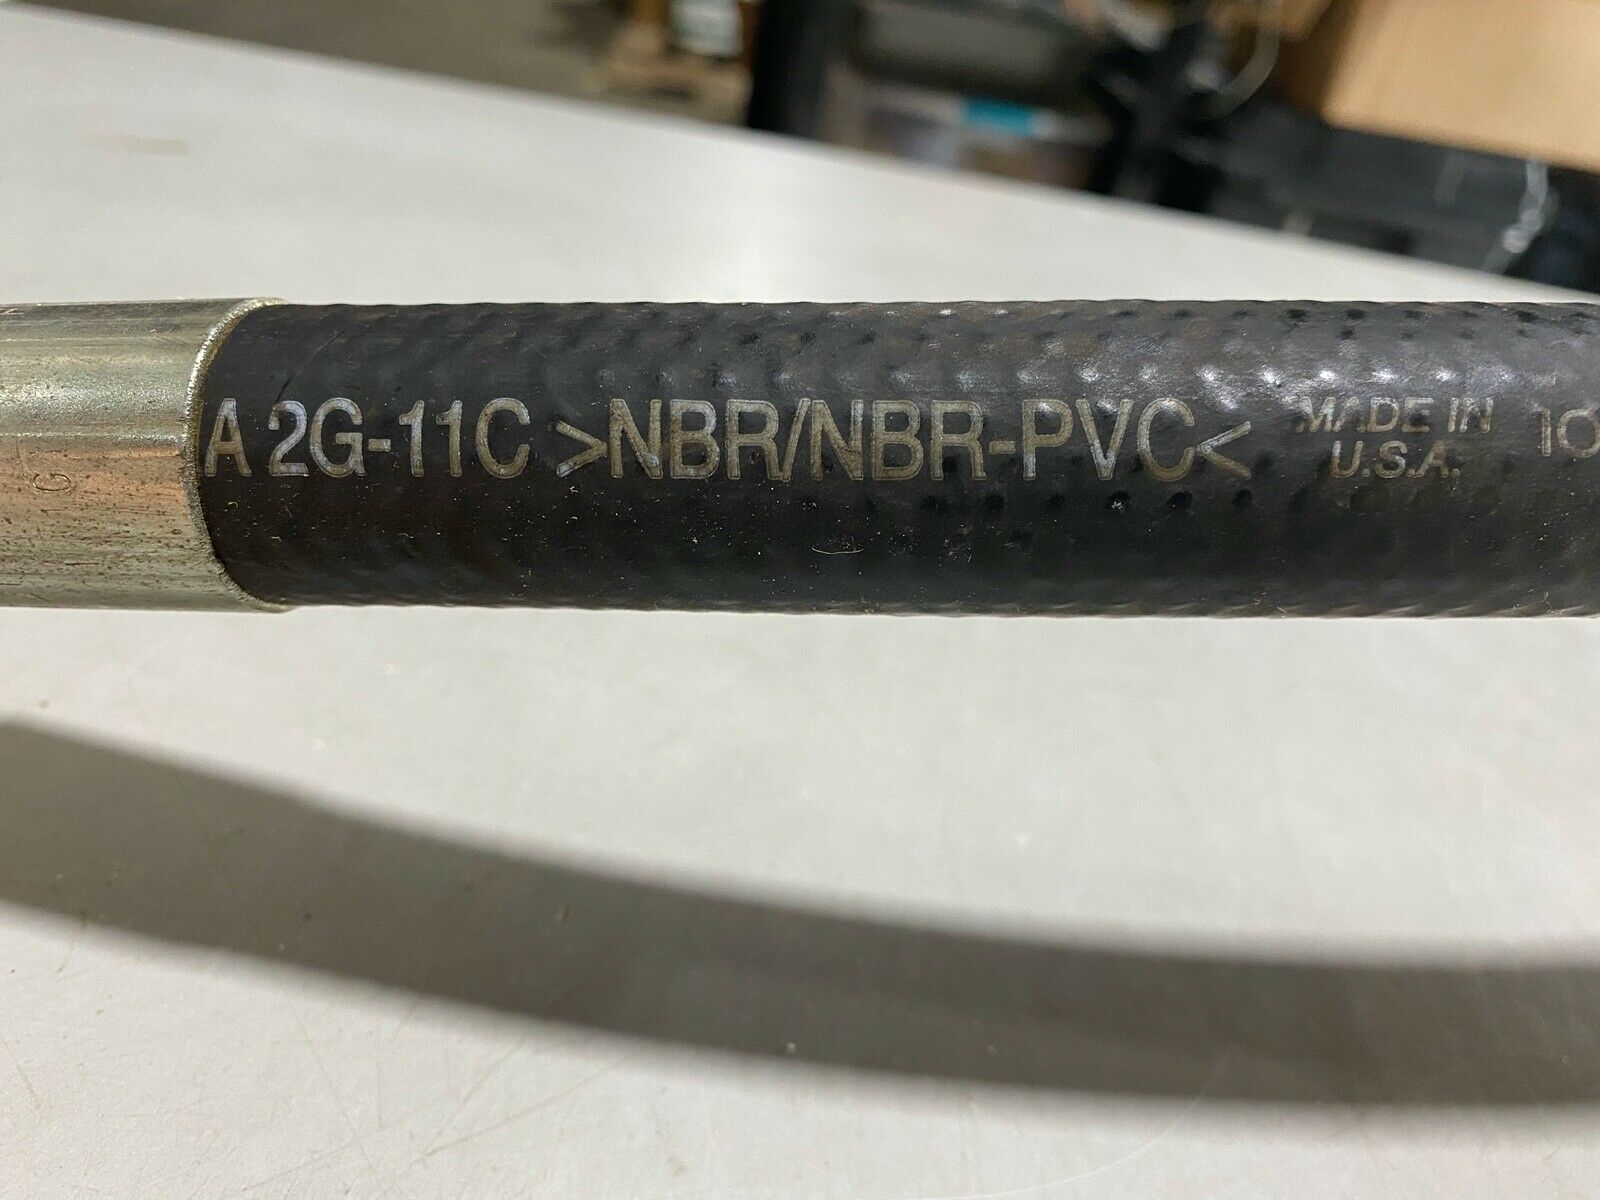 NBR PVC compound